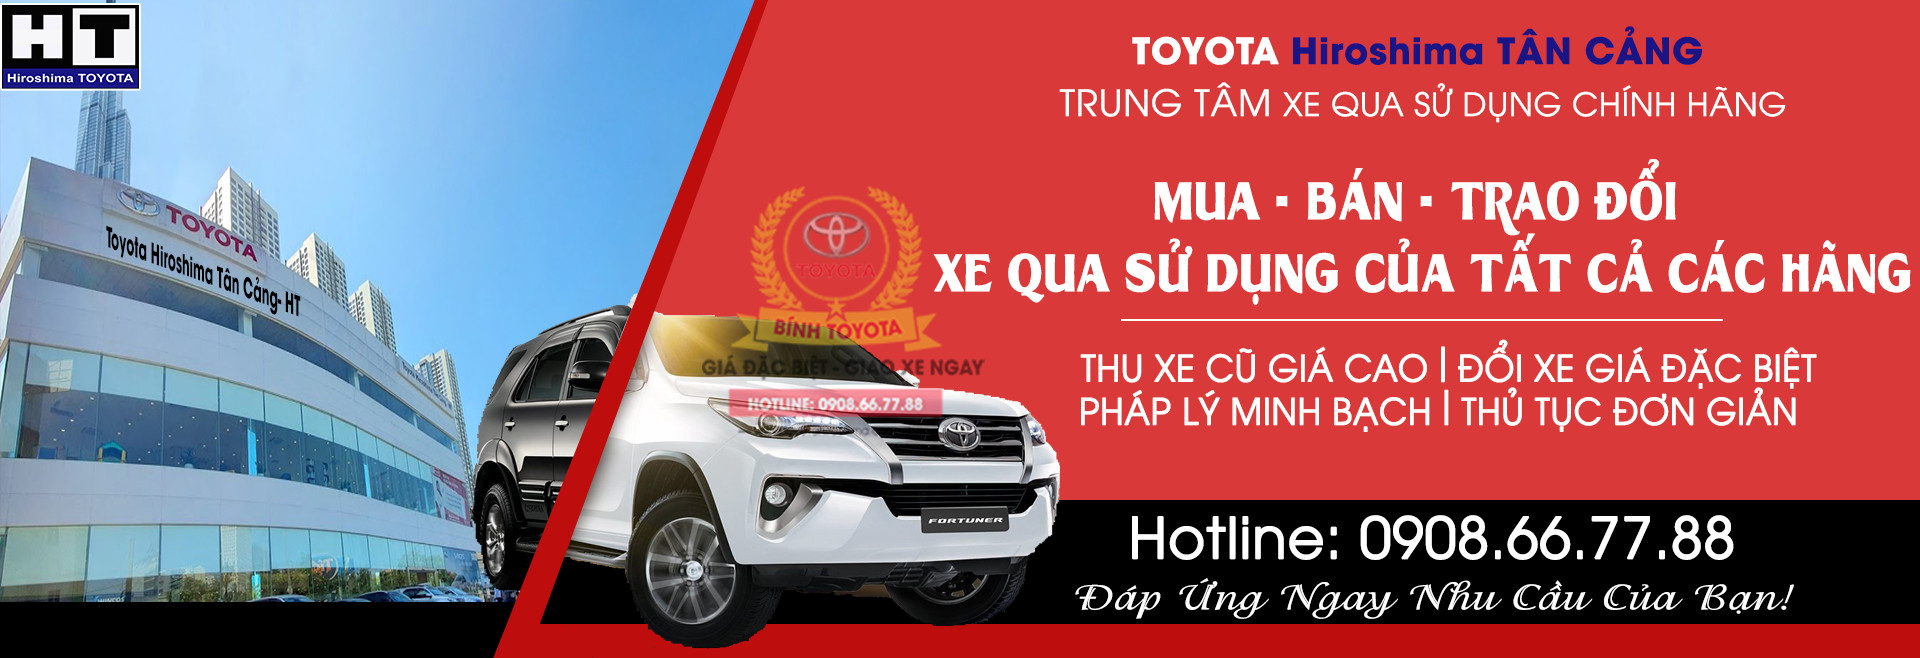 binh toyota tan cang mua ban xe qua su dung cac hang 200 - Toyota Sure - Dịch vụ Mua bán xe cũ chính hãng có bảo hành tại Việt Nam